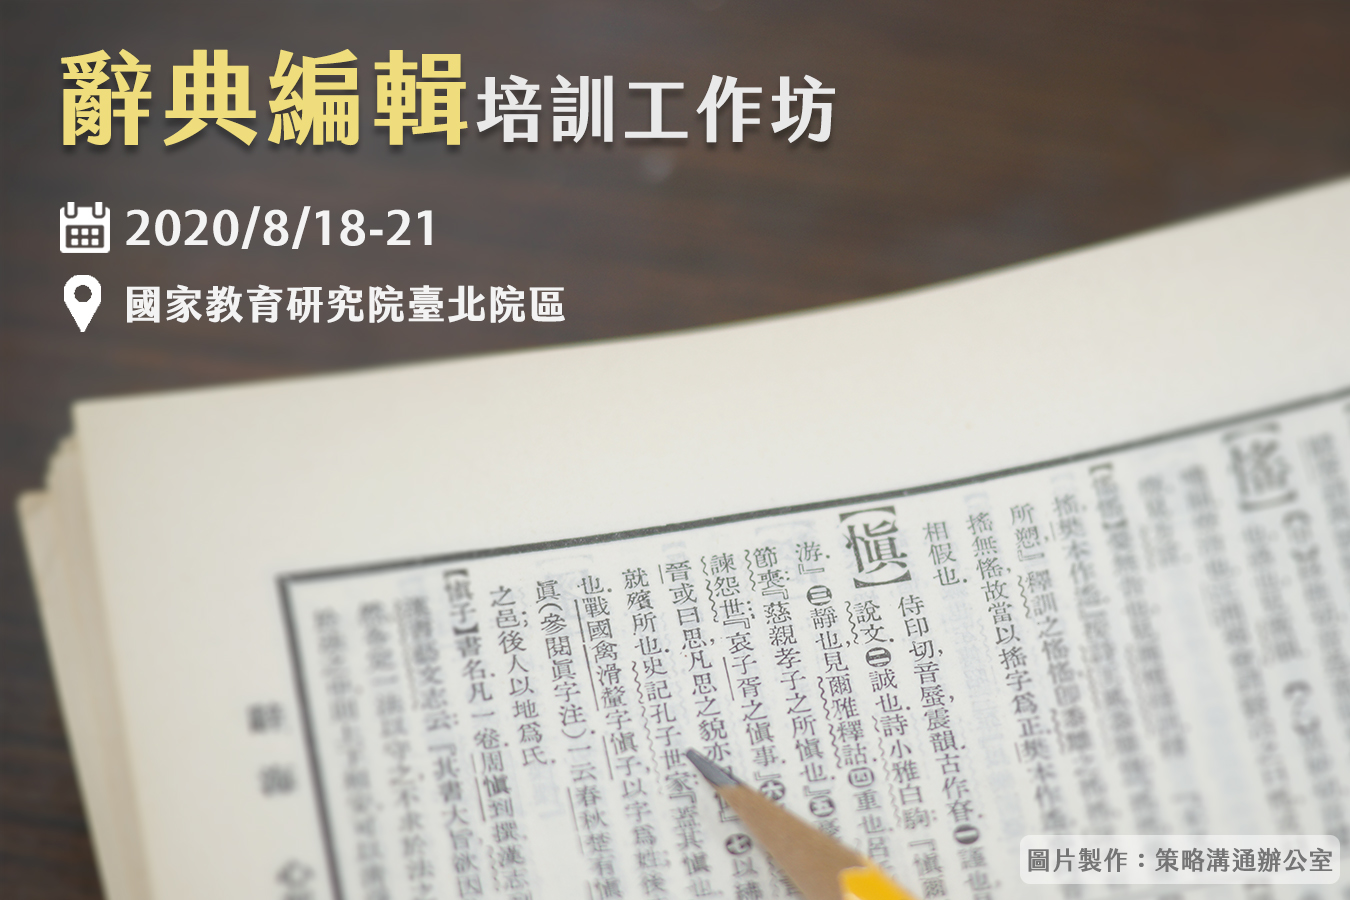 「第七屆辭典編輯培訓工作坊」將於8月18日至21日舉行